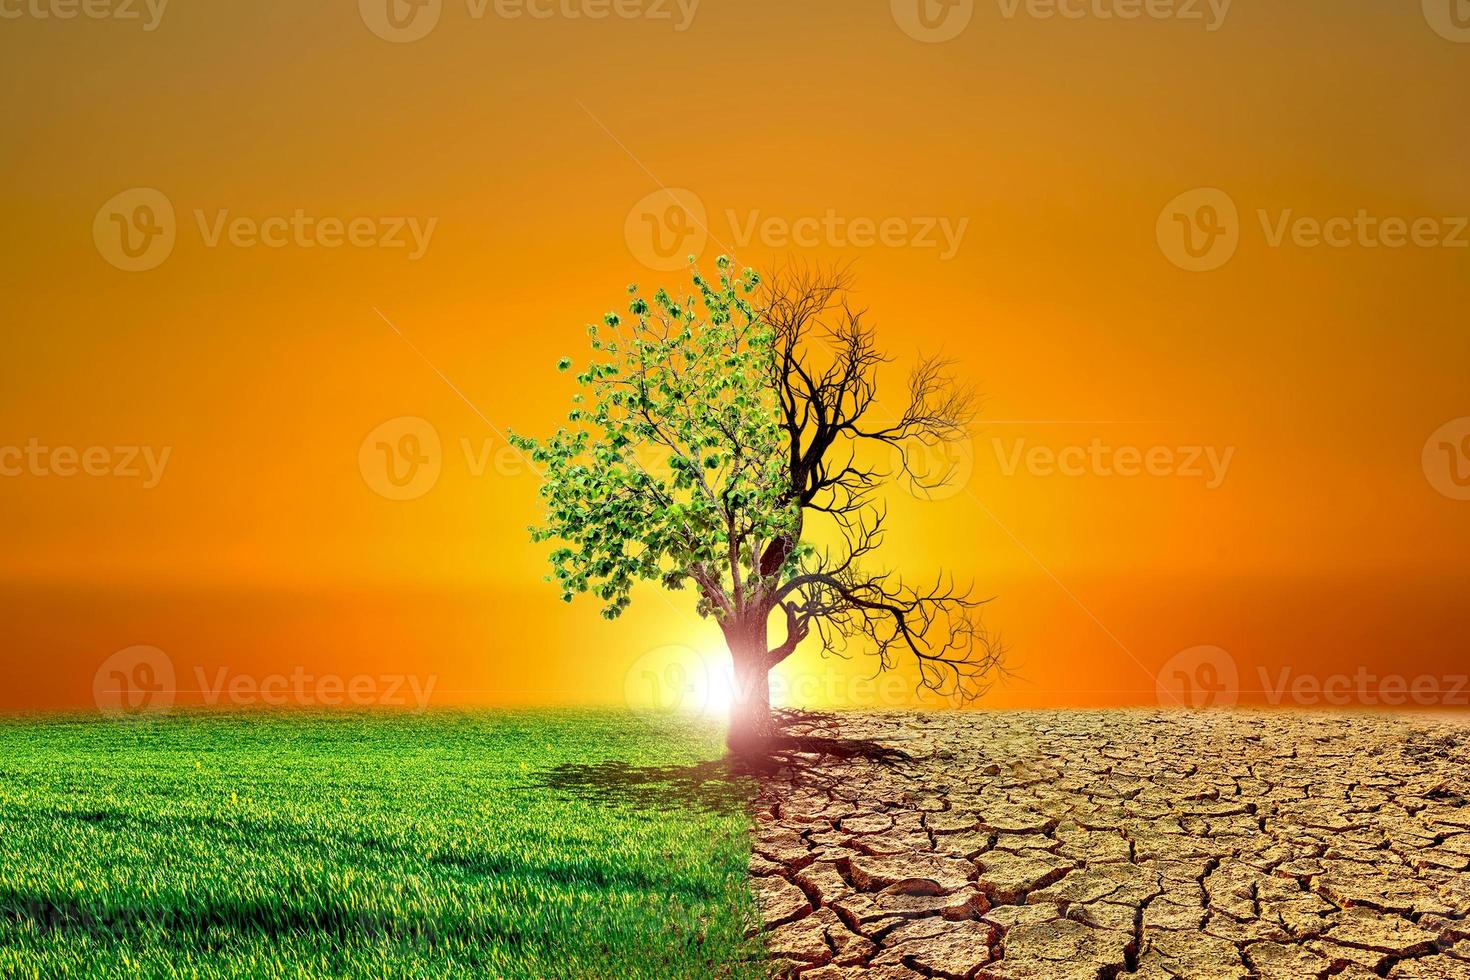 global uppvärmning konceptbild som visar effekterna av torr mark på den föränderliga miljön foto